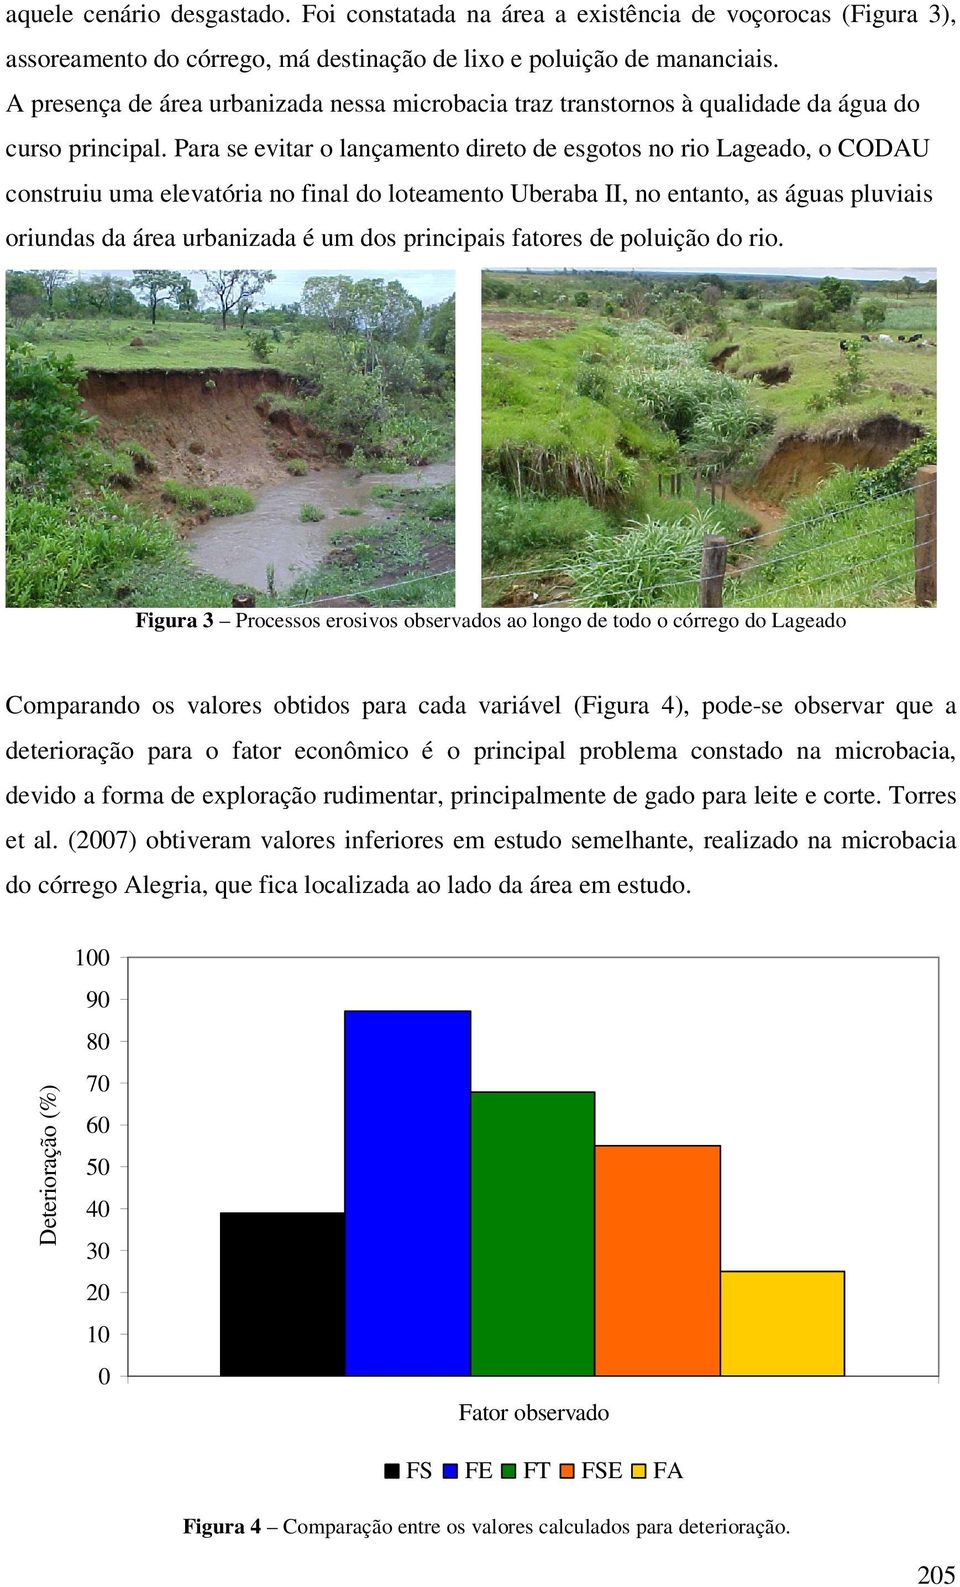 Para se evitar o lançamento direto de esgotos no rio Lageado, o CODAU construiu uma elevatória no final do loteamento Uberaba II, no entanto, as águas pluviais oriundas da área urbanizada é um dos